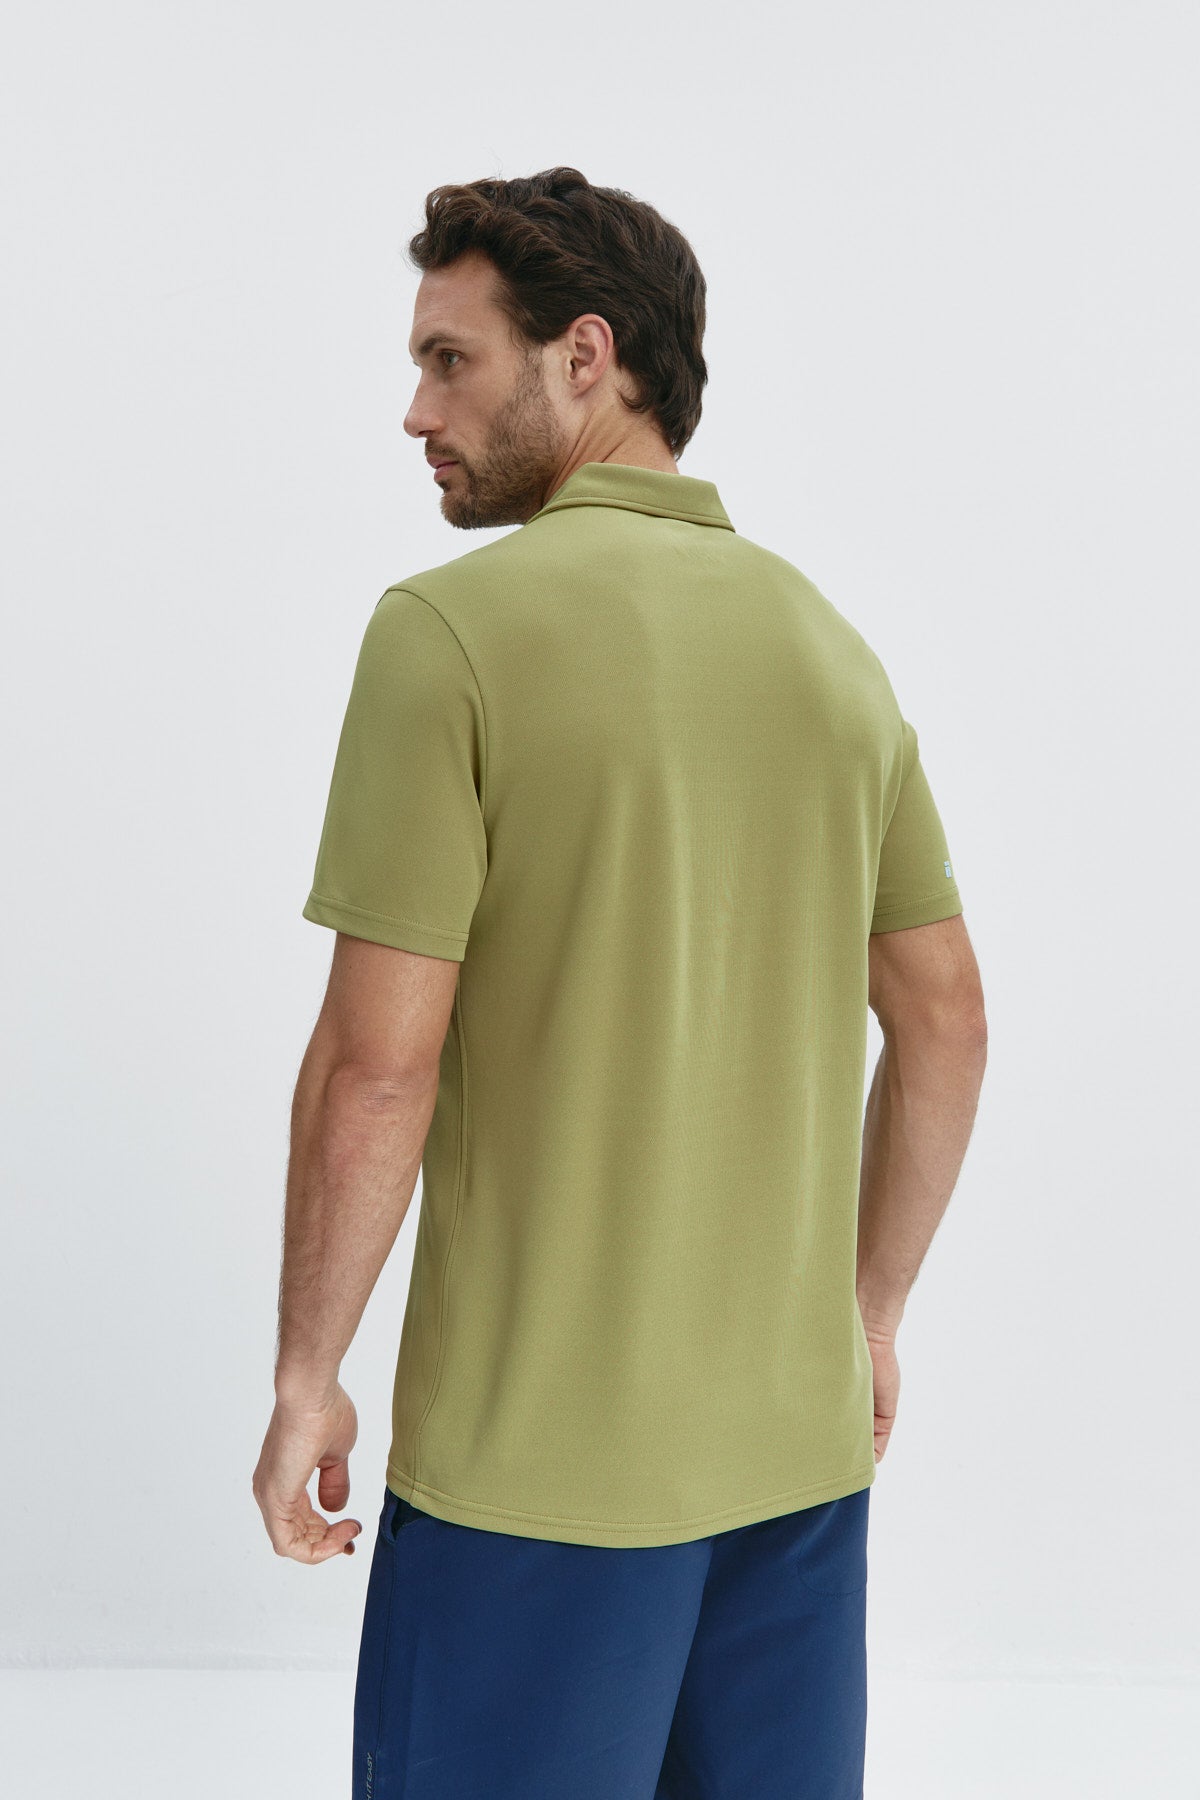 Polo manga corta para hombre en verde manzana de Sepiia, estilo y comodidad para cualquier ocasión. Foto espalda